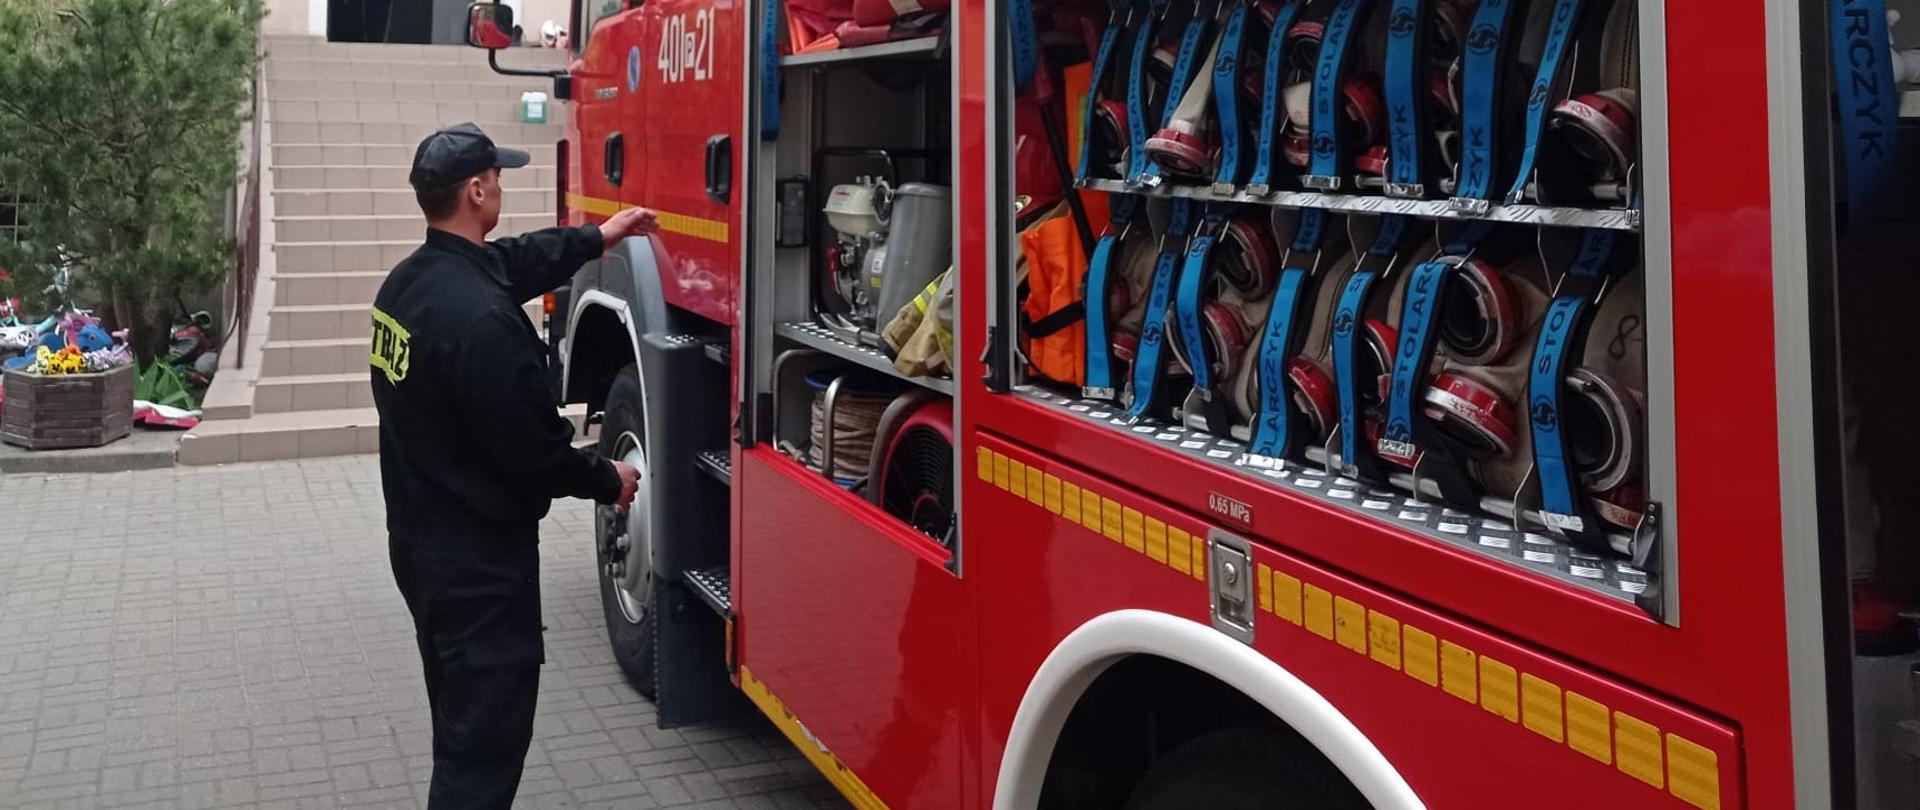 Zdjęcie przedstawia strażaków oraz sprzęt i pojazdy strażackie podczas rozpoznania operacyjnego obiektu.
W tle budynek.
